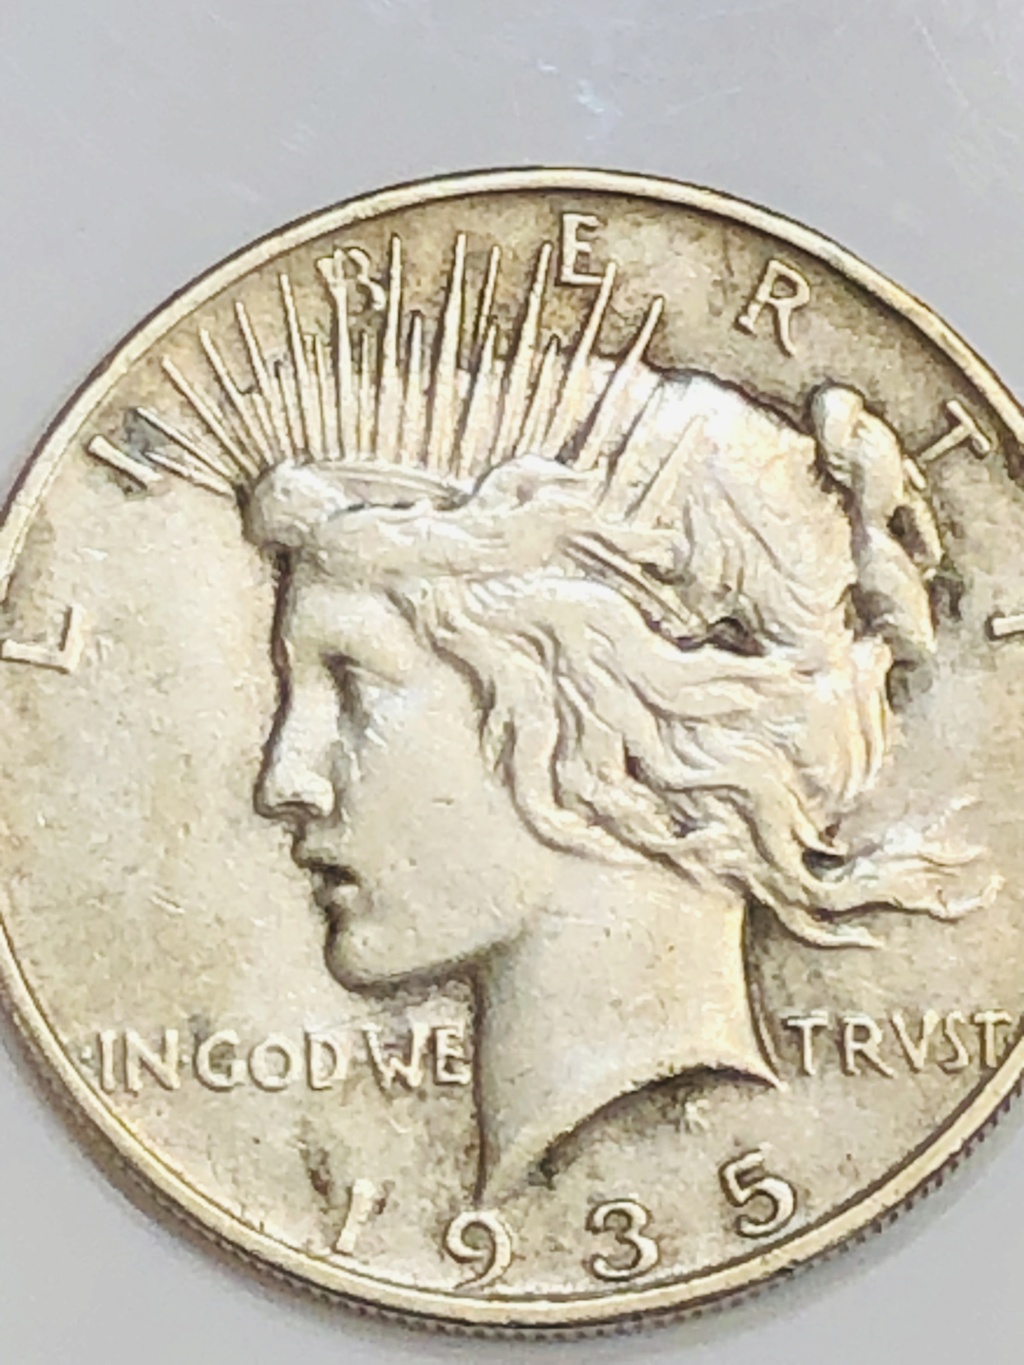 Cheap silver coin won at auction $17 E7337210